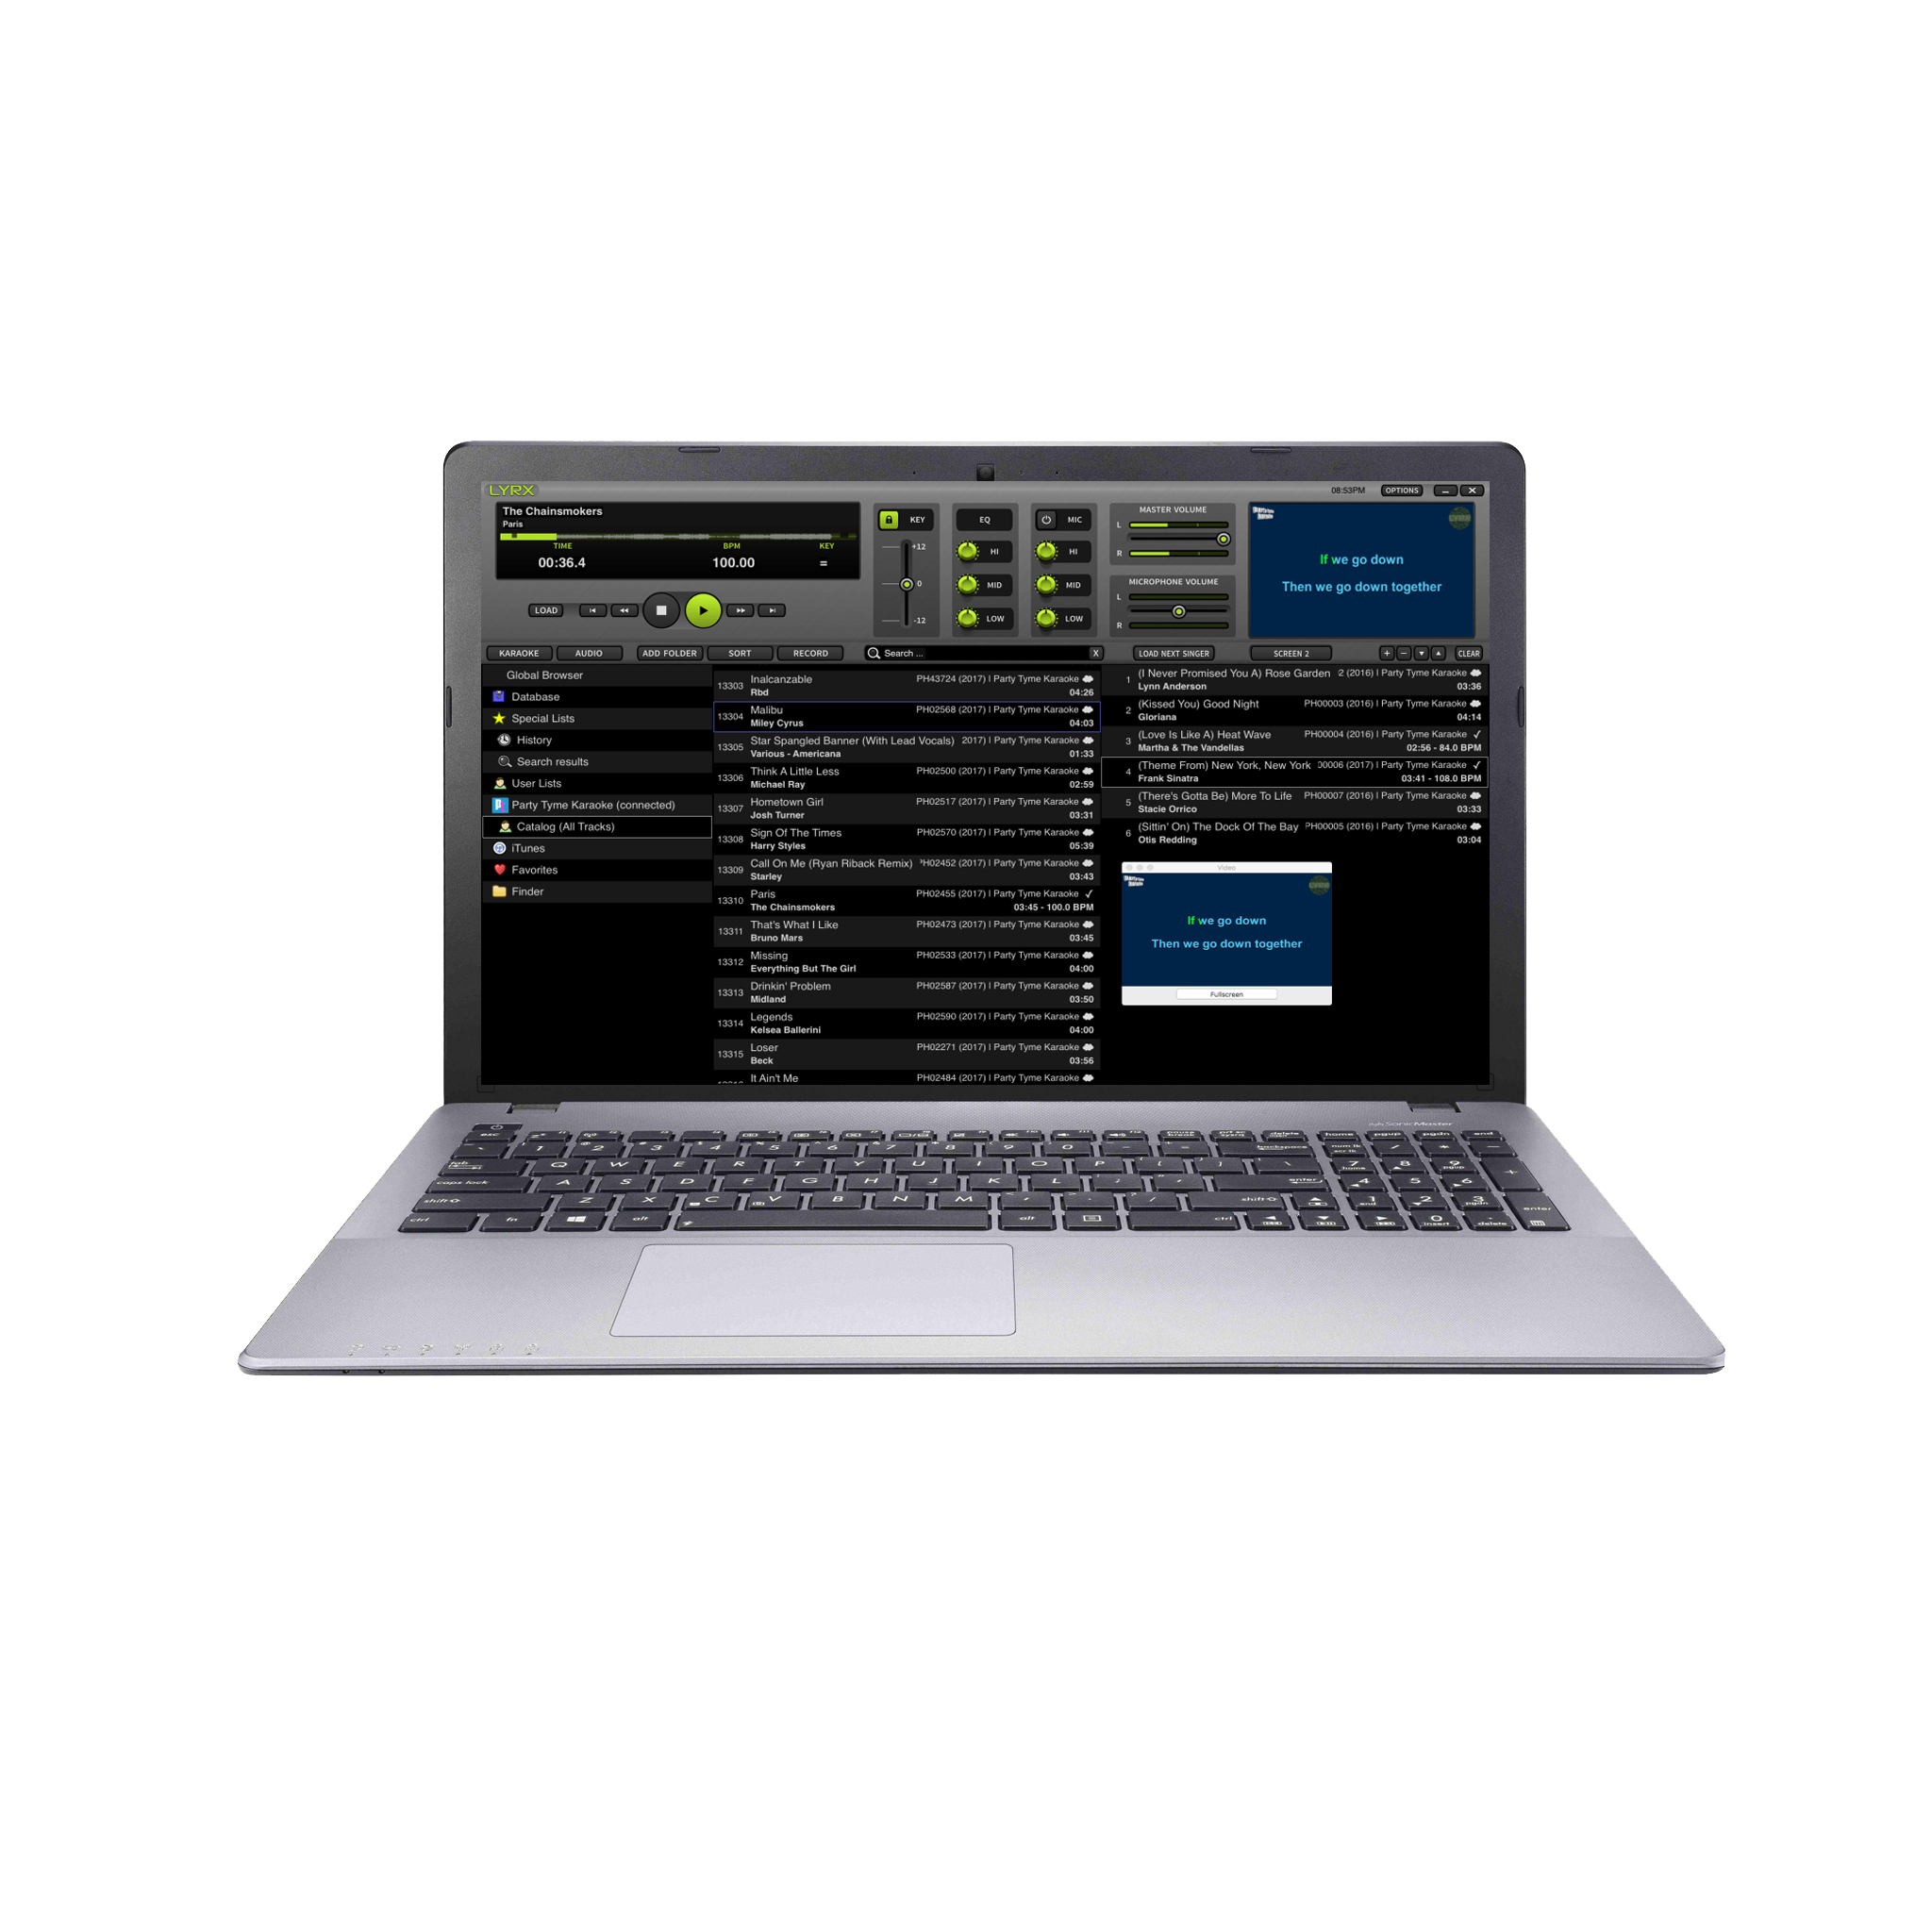 Karaoke DJ Laptop Professional System with Karaoke Music & 1330 free karaoke songs Mid Level